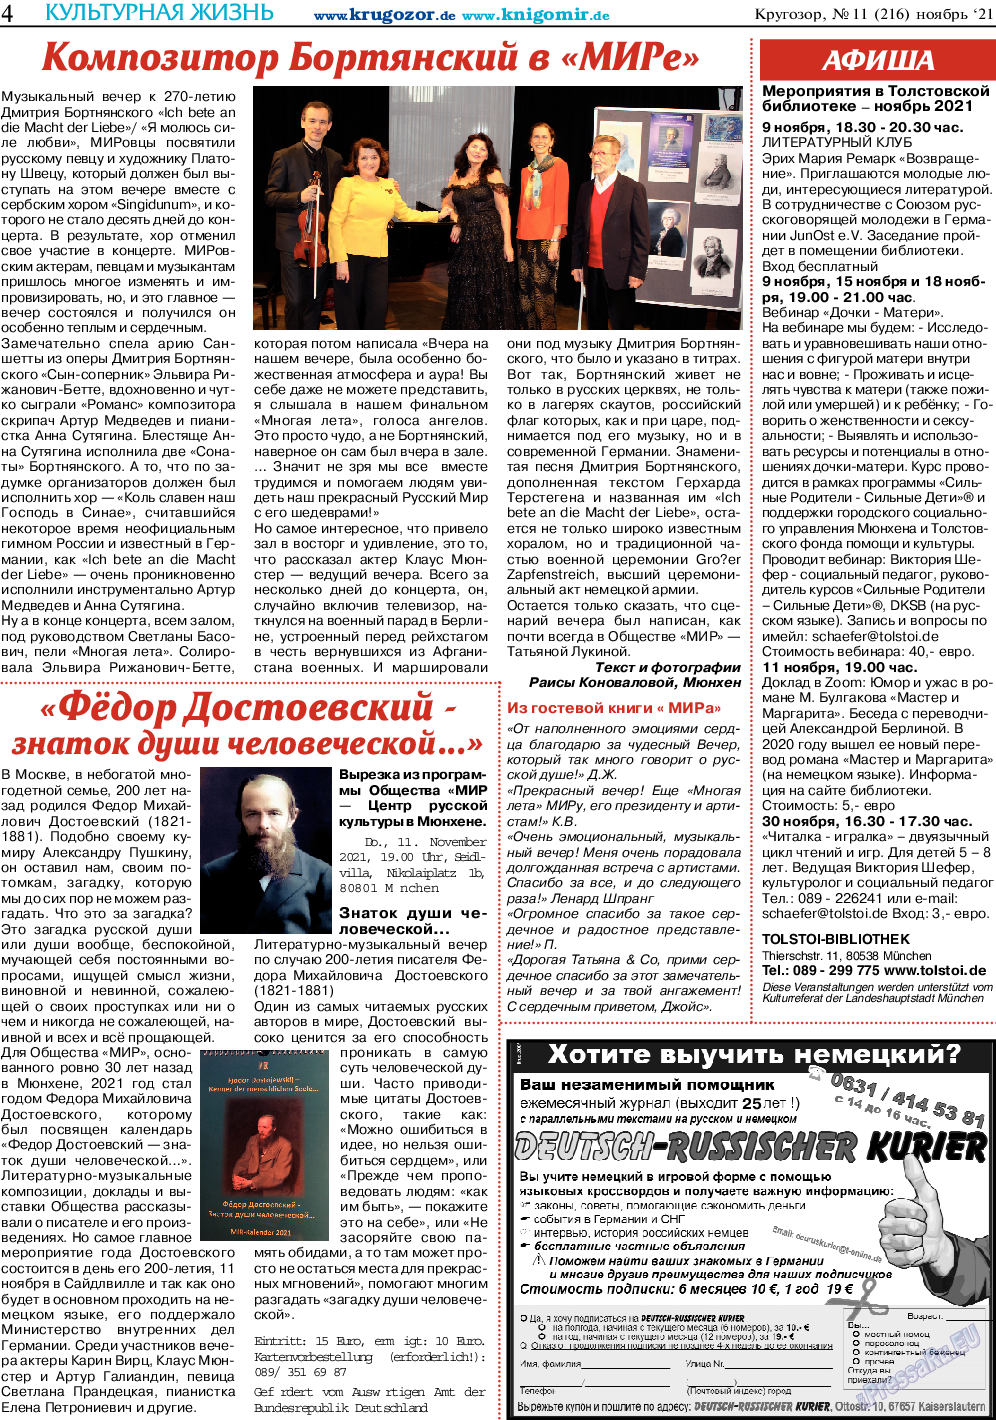 Кругозор, газета. 2021 №11 стр.4